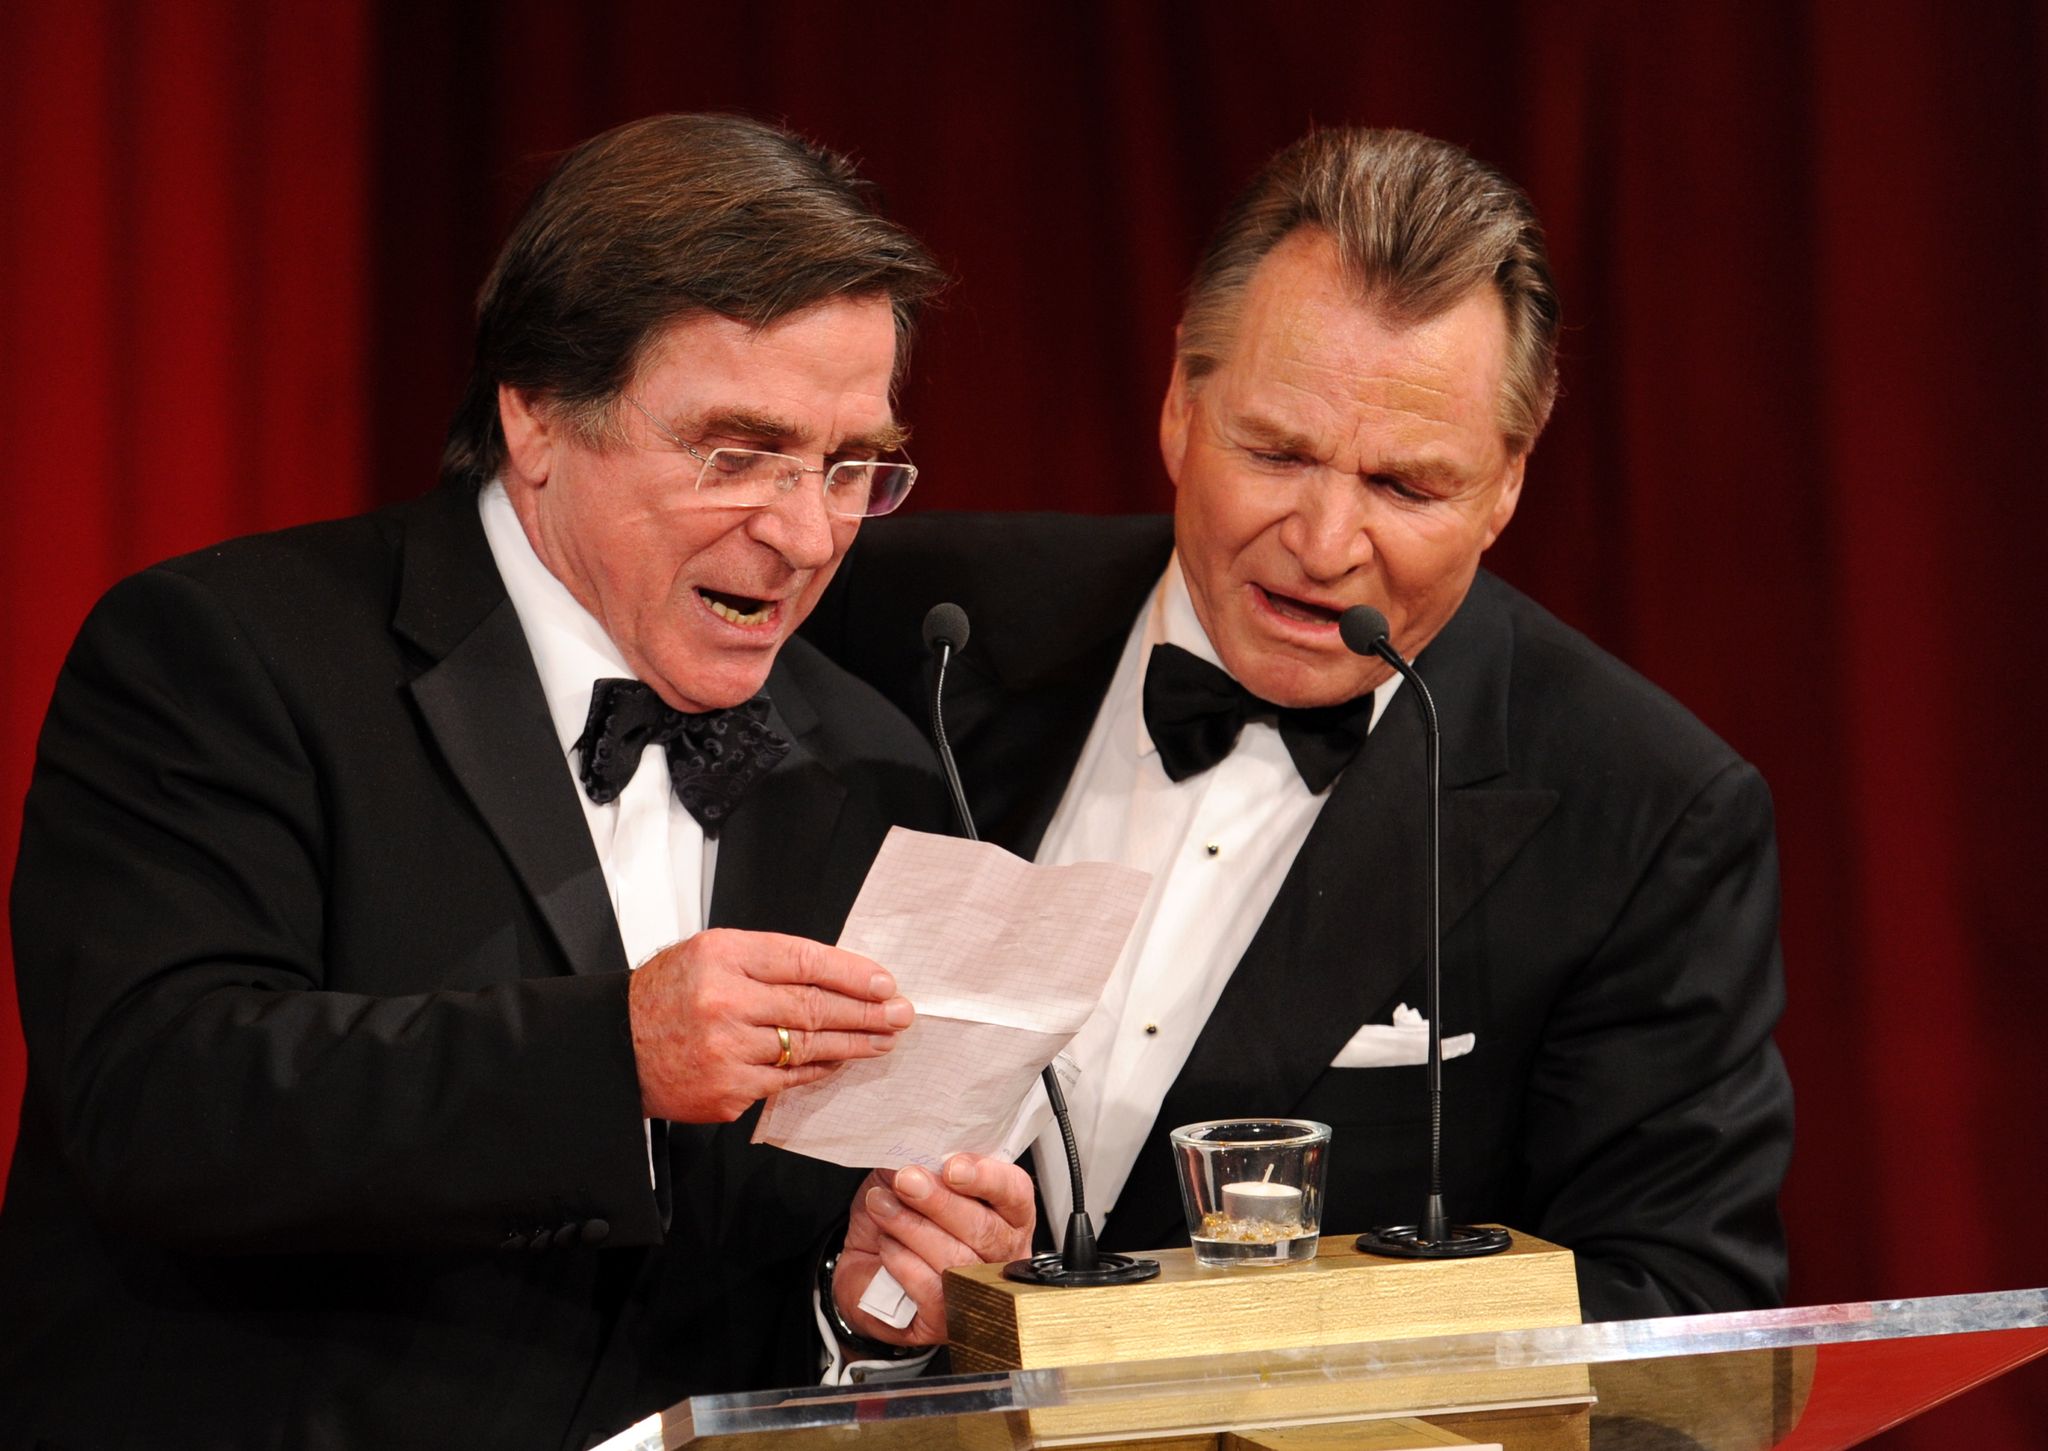 Die Schauspieler-Brüder Elmar (l) und Fritz Wepper bedanken sich für die Verleihung des Deutschen Entertainment-Preises DIVA (2009).